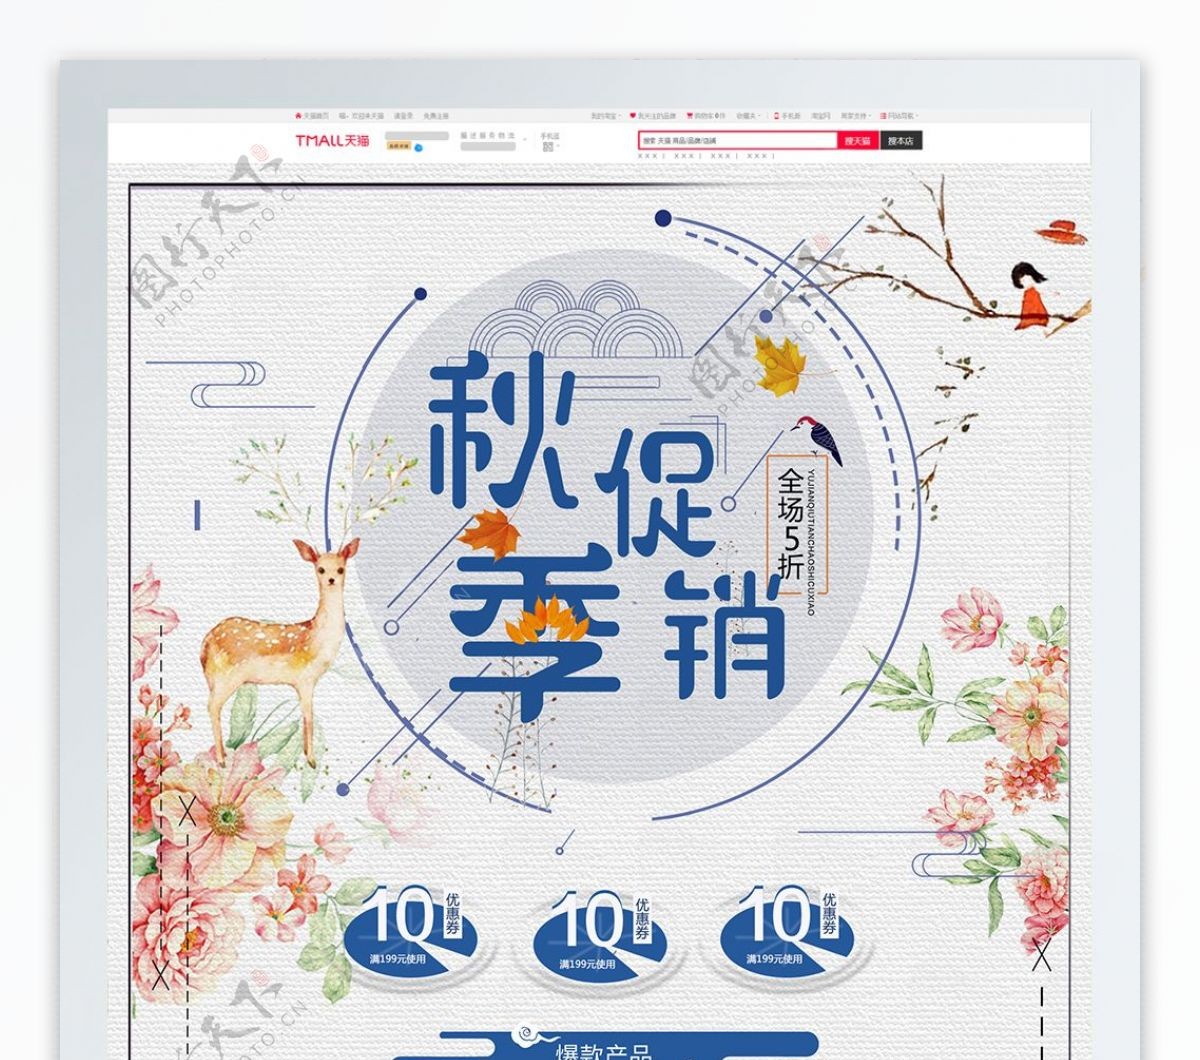 蓝色中国风电商促销秋季促销淘宝首页模板